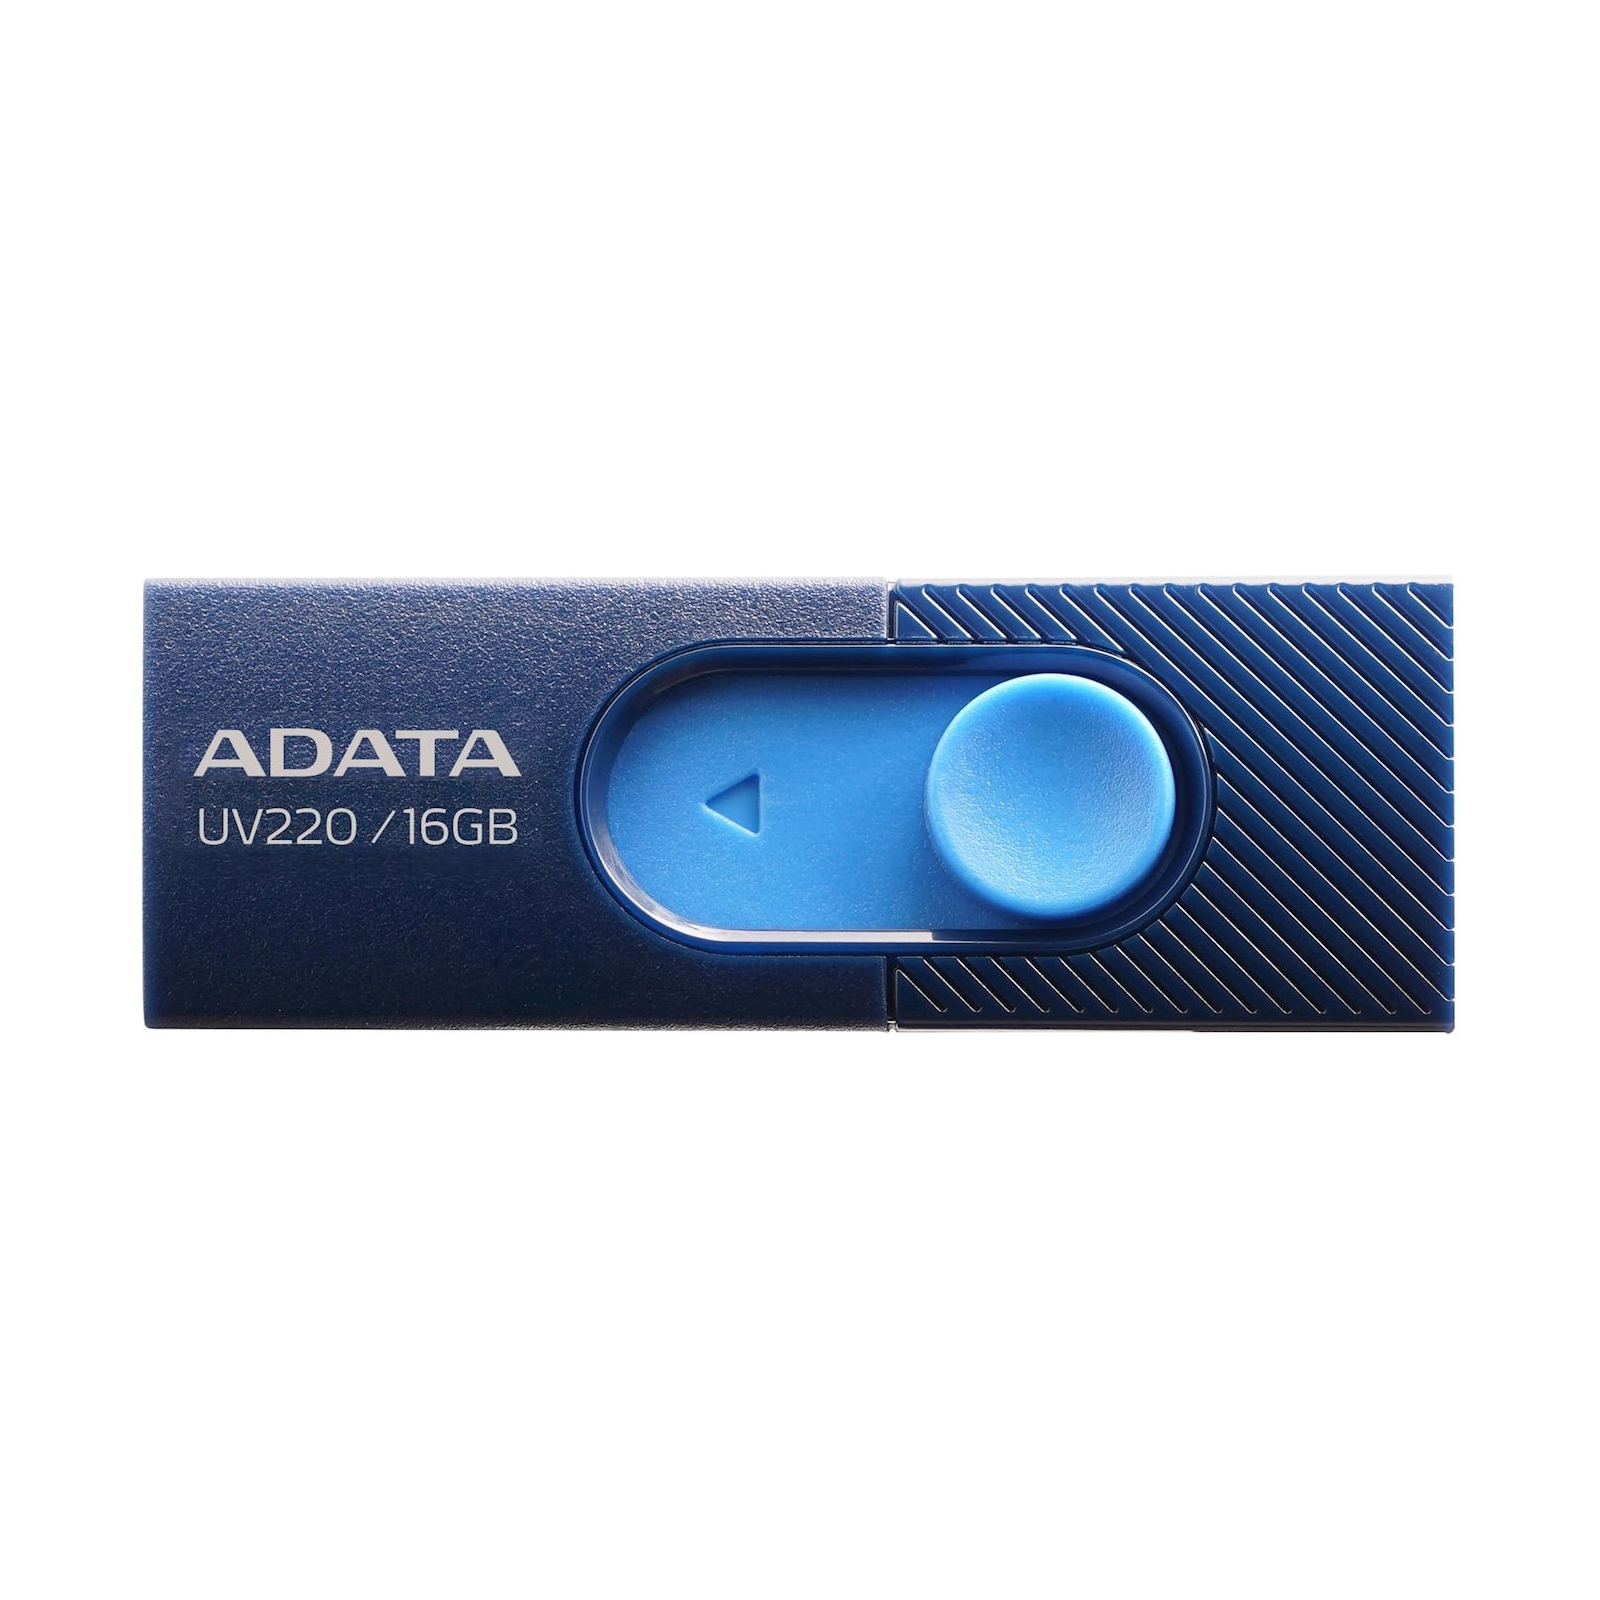 USB флеш накопитель ADATA 16GB UV220 Blue/Navy USB 2.0 (AUV220-16G-RBLNV)